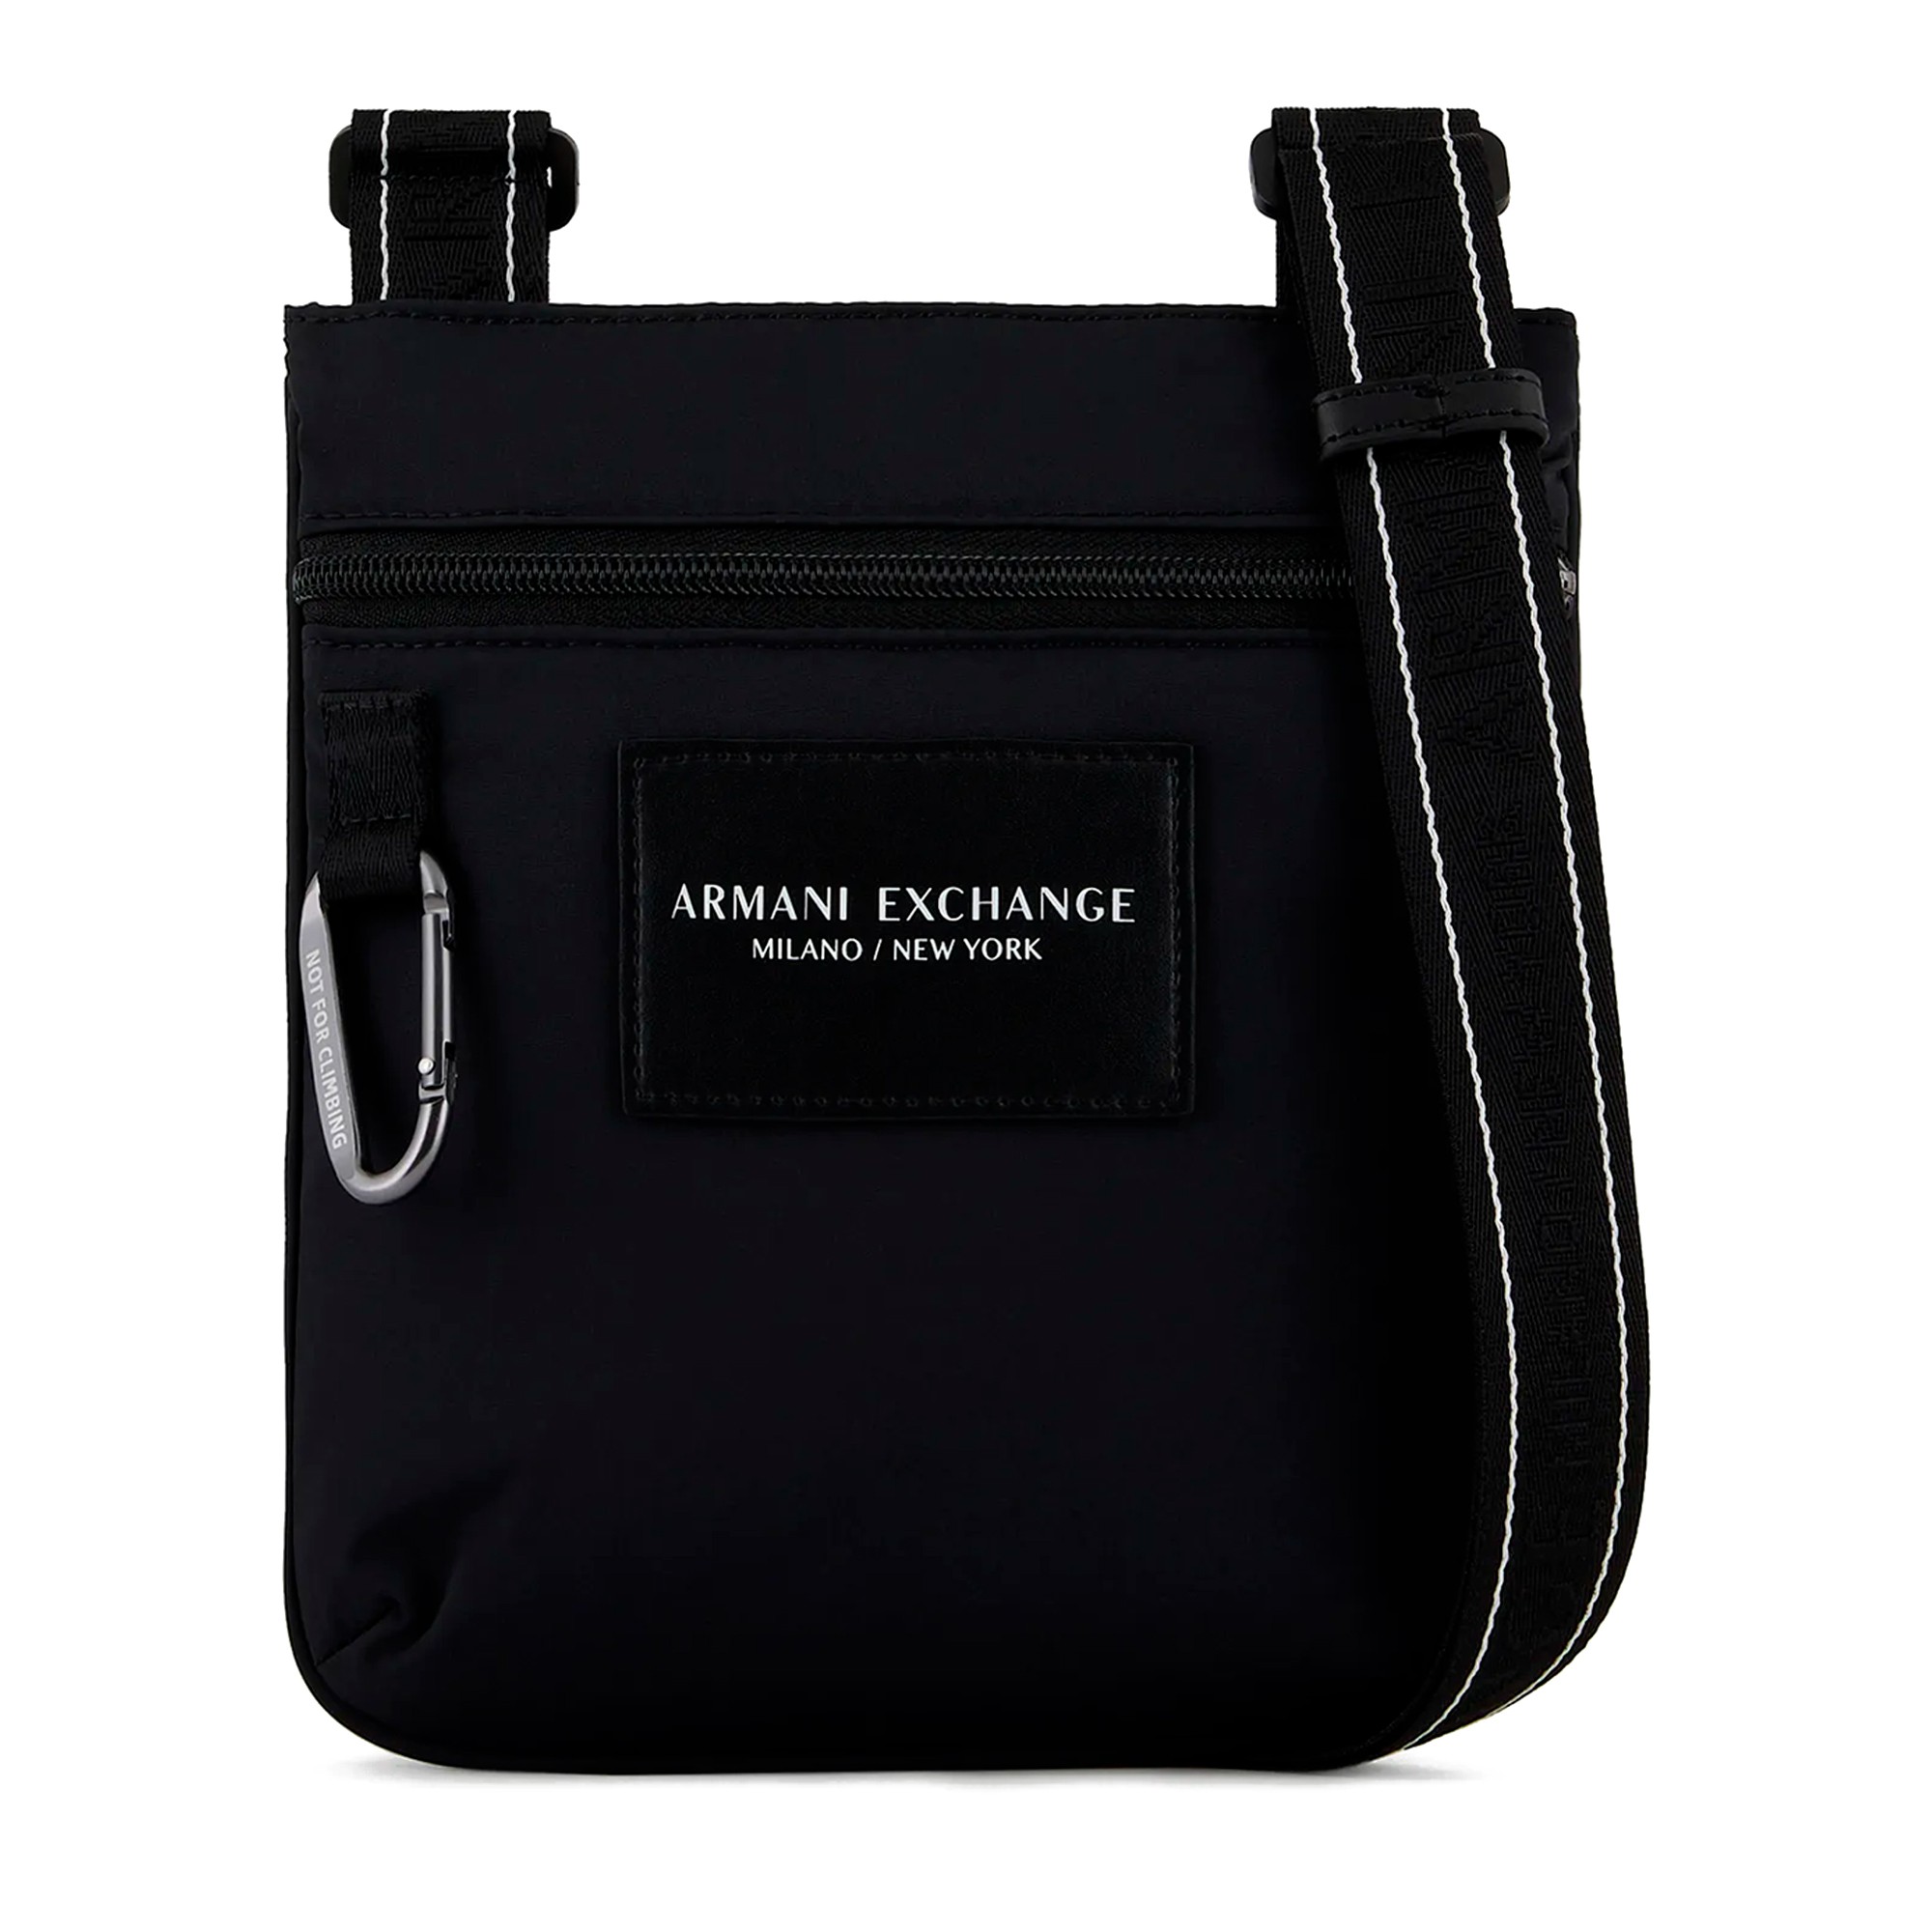 Armani Exchange CROSSBODY WOMAN - Across body bag - black - Zalando.co.uk